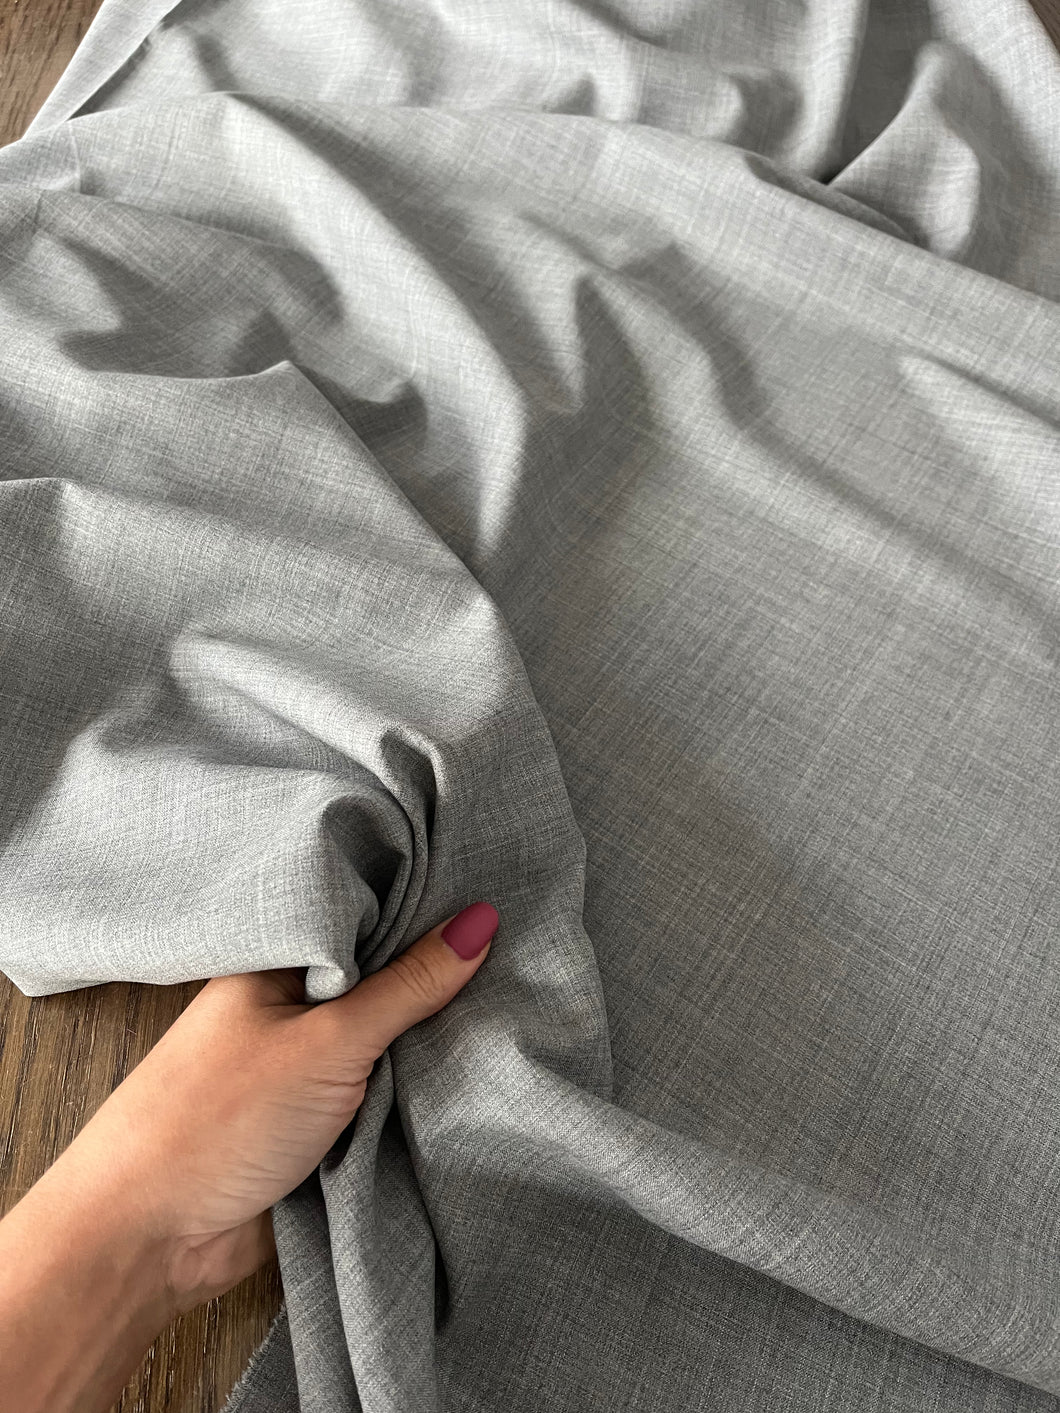 Fresco lana grigio chiaro: 28€/m